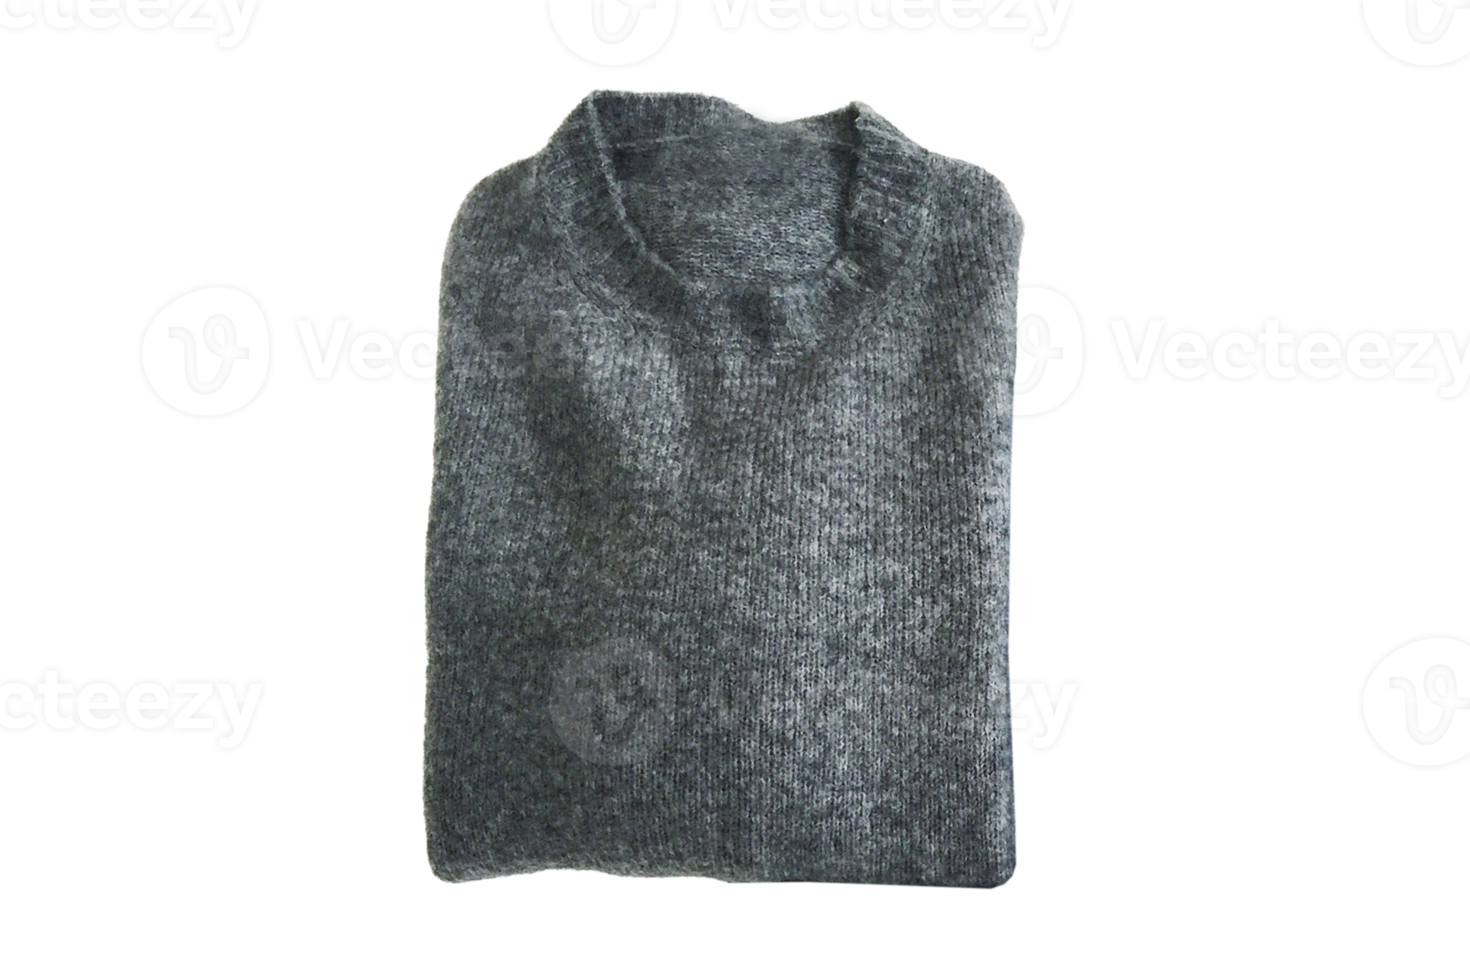 grau Sweatshirt isoliert auf ein transparent Hintergrund png